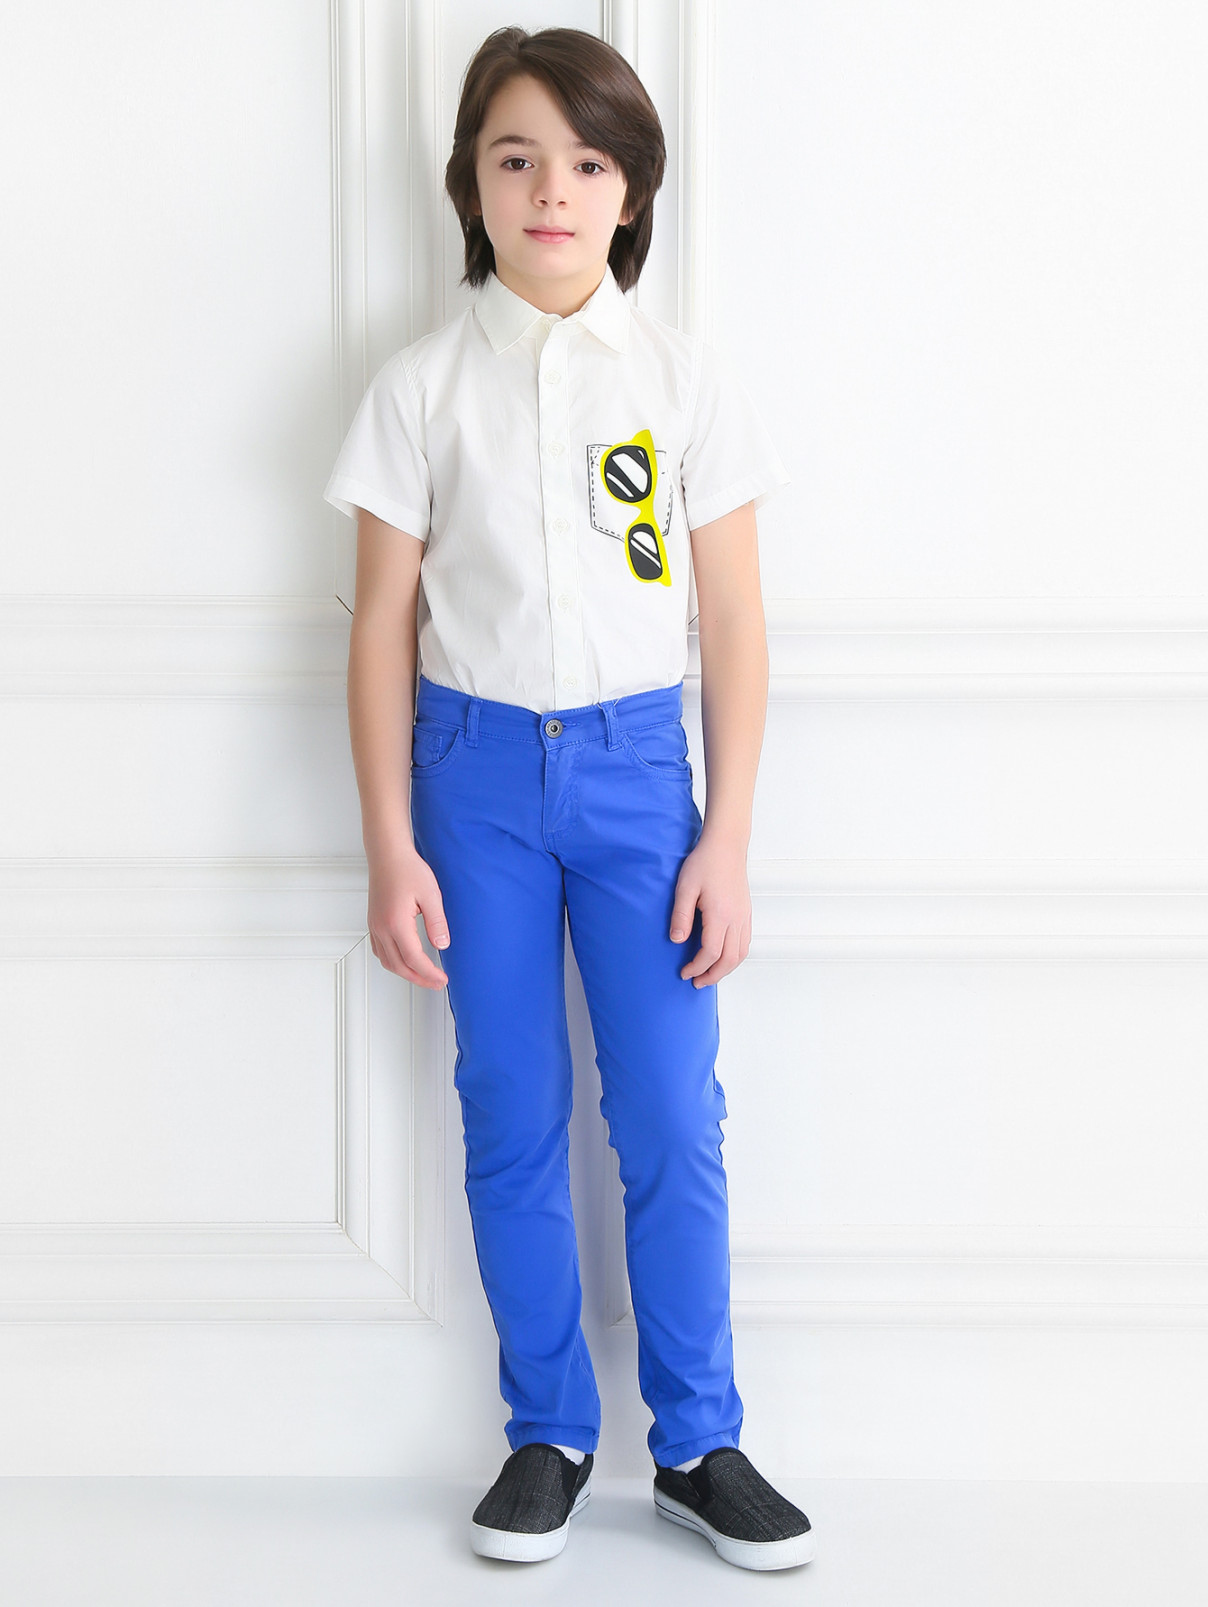 Рубашка из хлопка с принтом Moschino  –  Модель Общий вид  – Цвет:  Белый